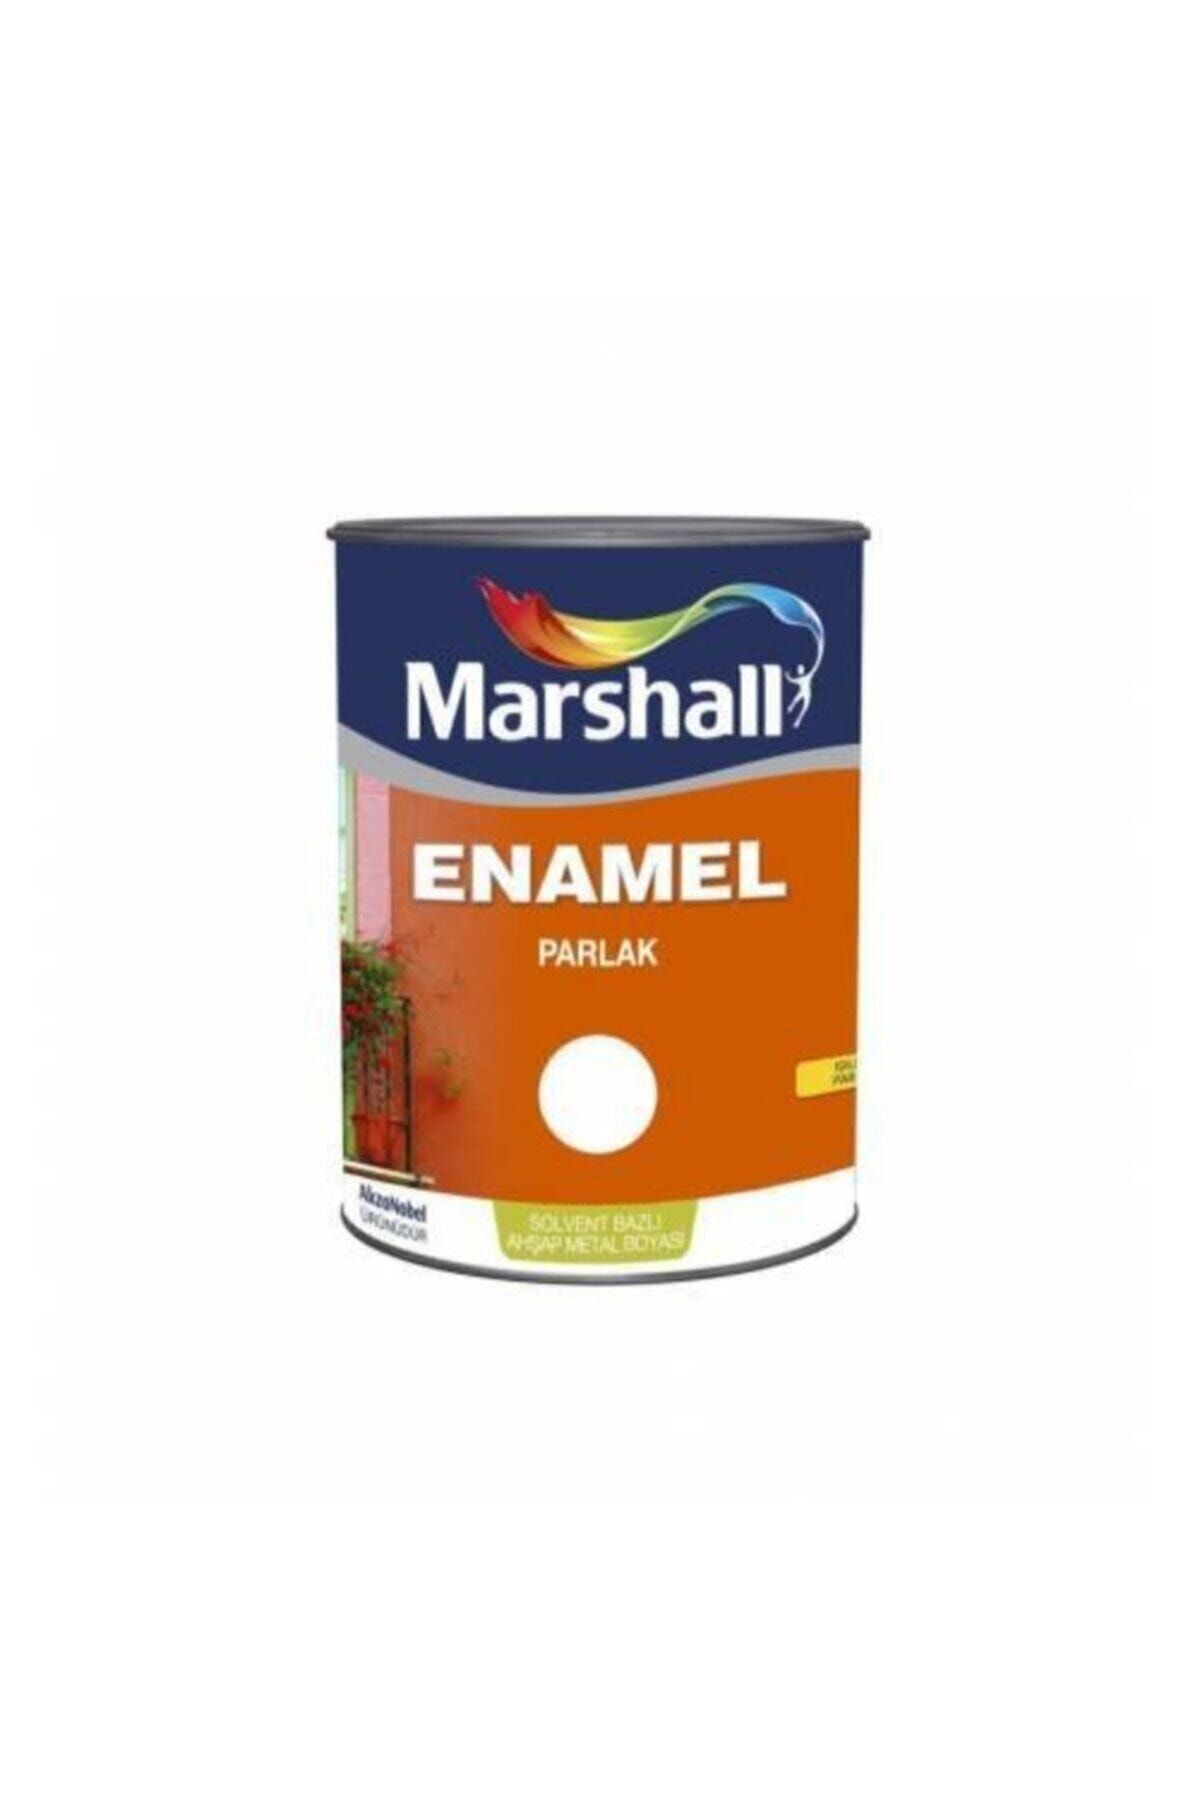 Marshall Marshal Enamel Parlak Solvent Bazlı Ahşap Metal Boyası 2.5l